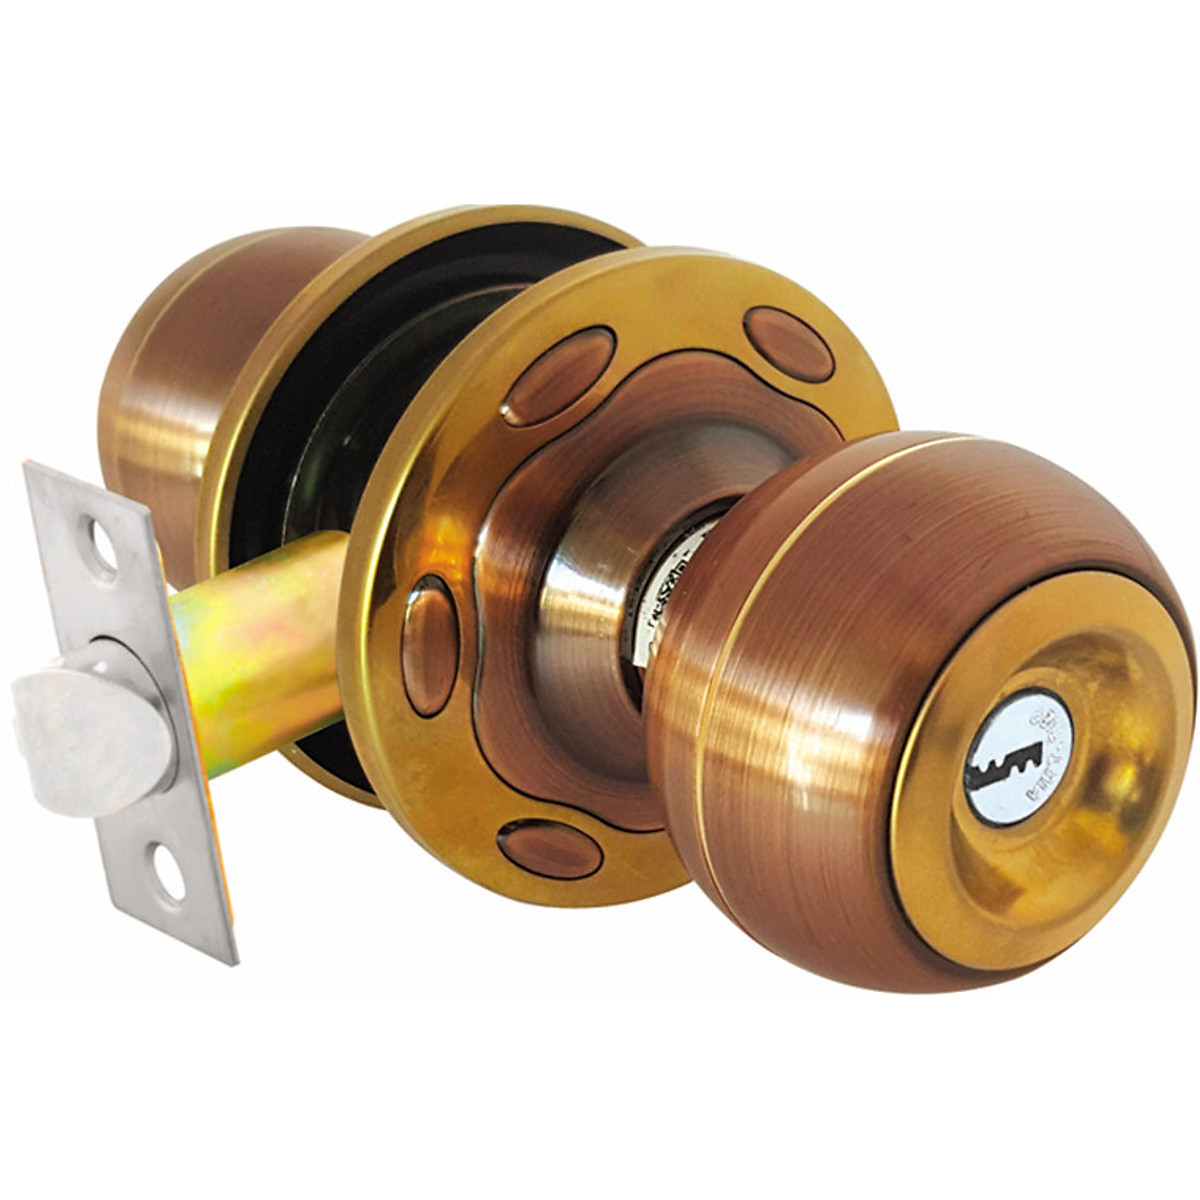 Ổ khóa cửa tay nắm tròn Việt Tiệp 04213 cò dài / cò ngắn, chất liệu inox màu nâu vàng dành cho các loại cửa thông phòng